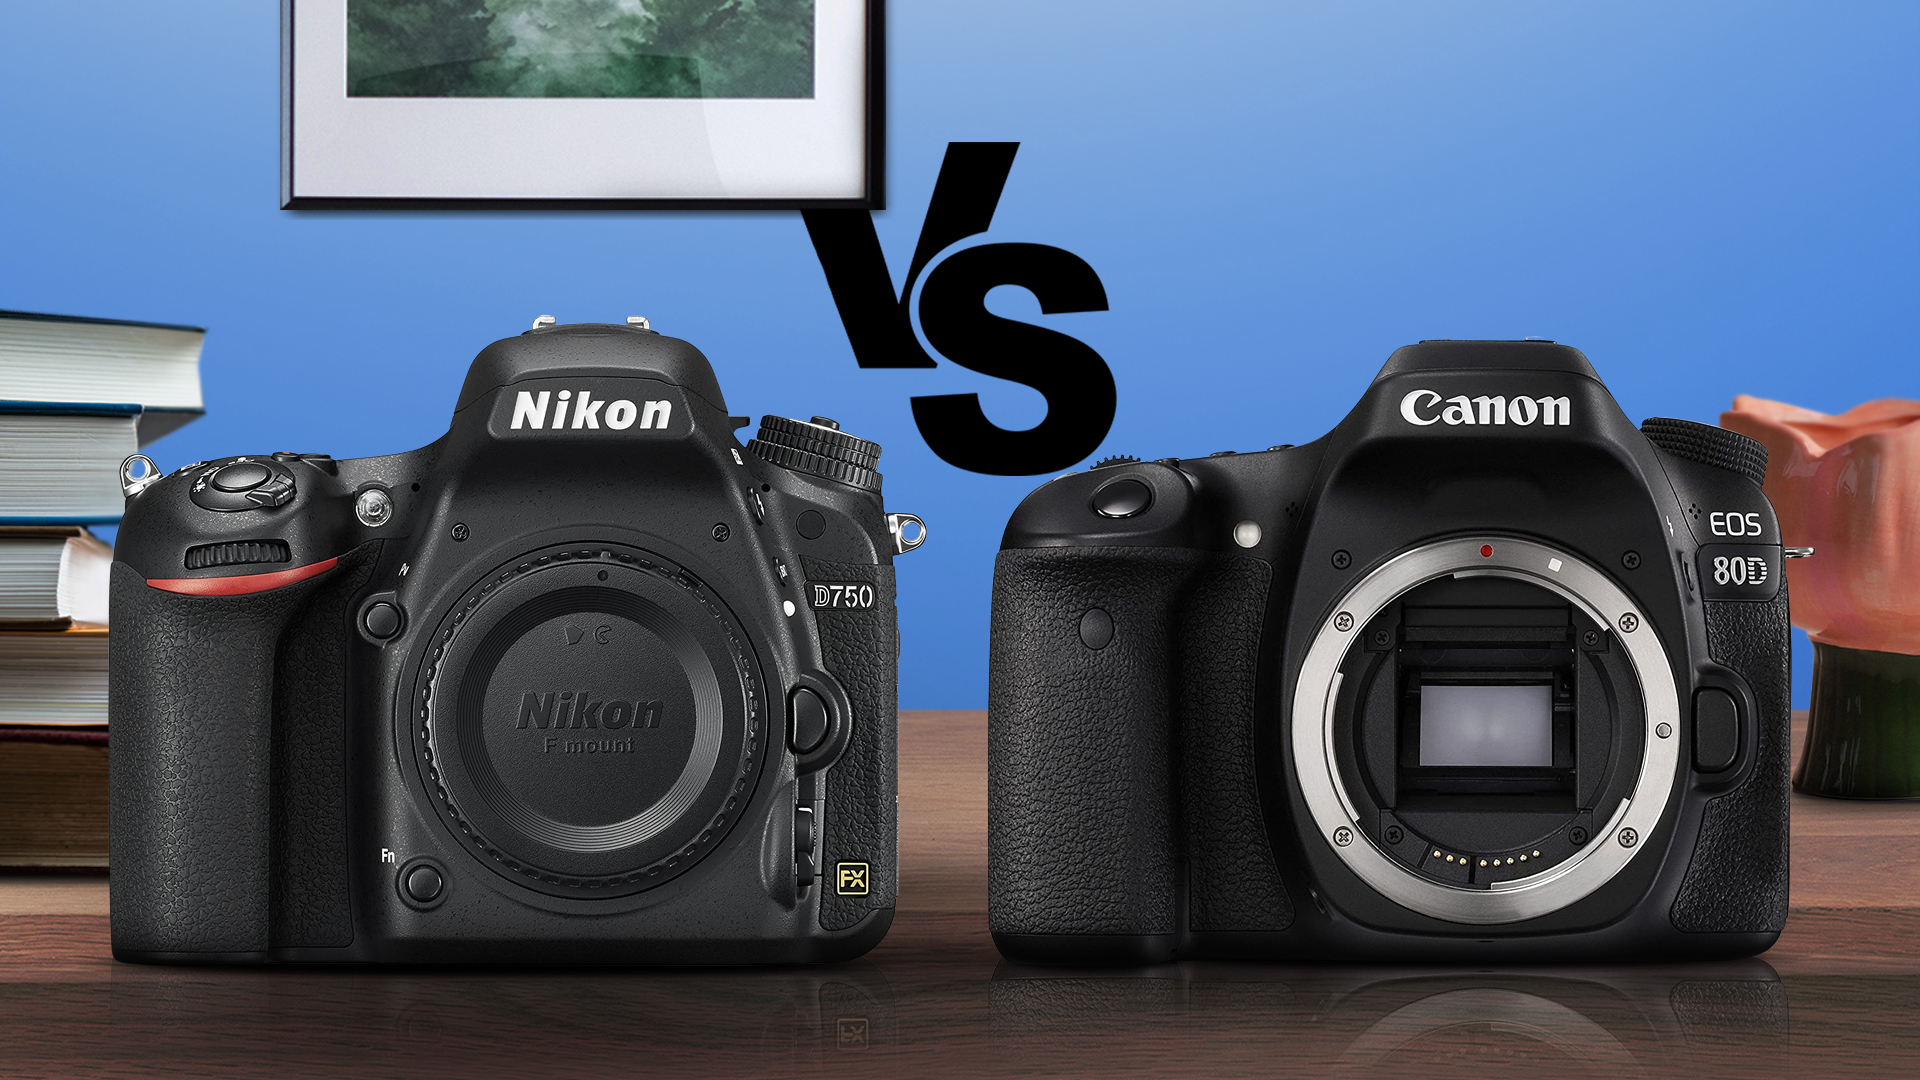 Nikon D750 vs Canon 80D